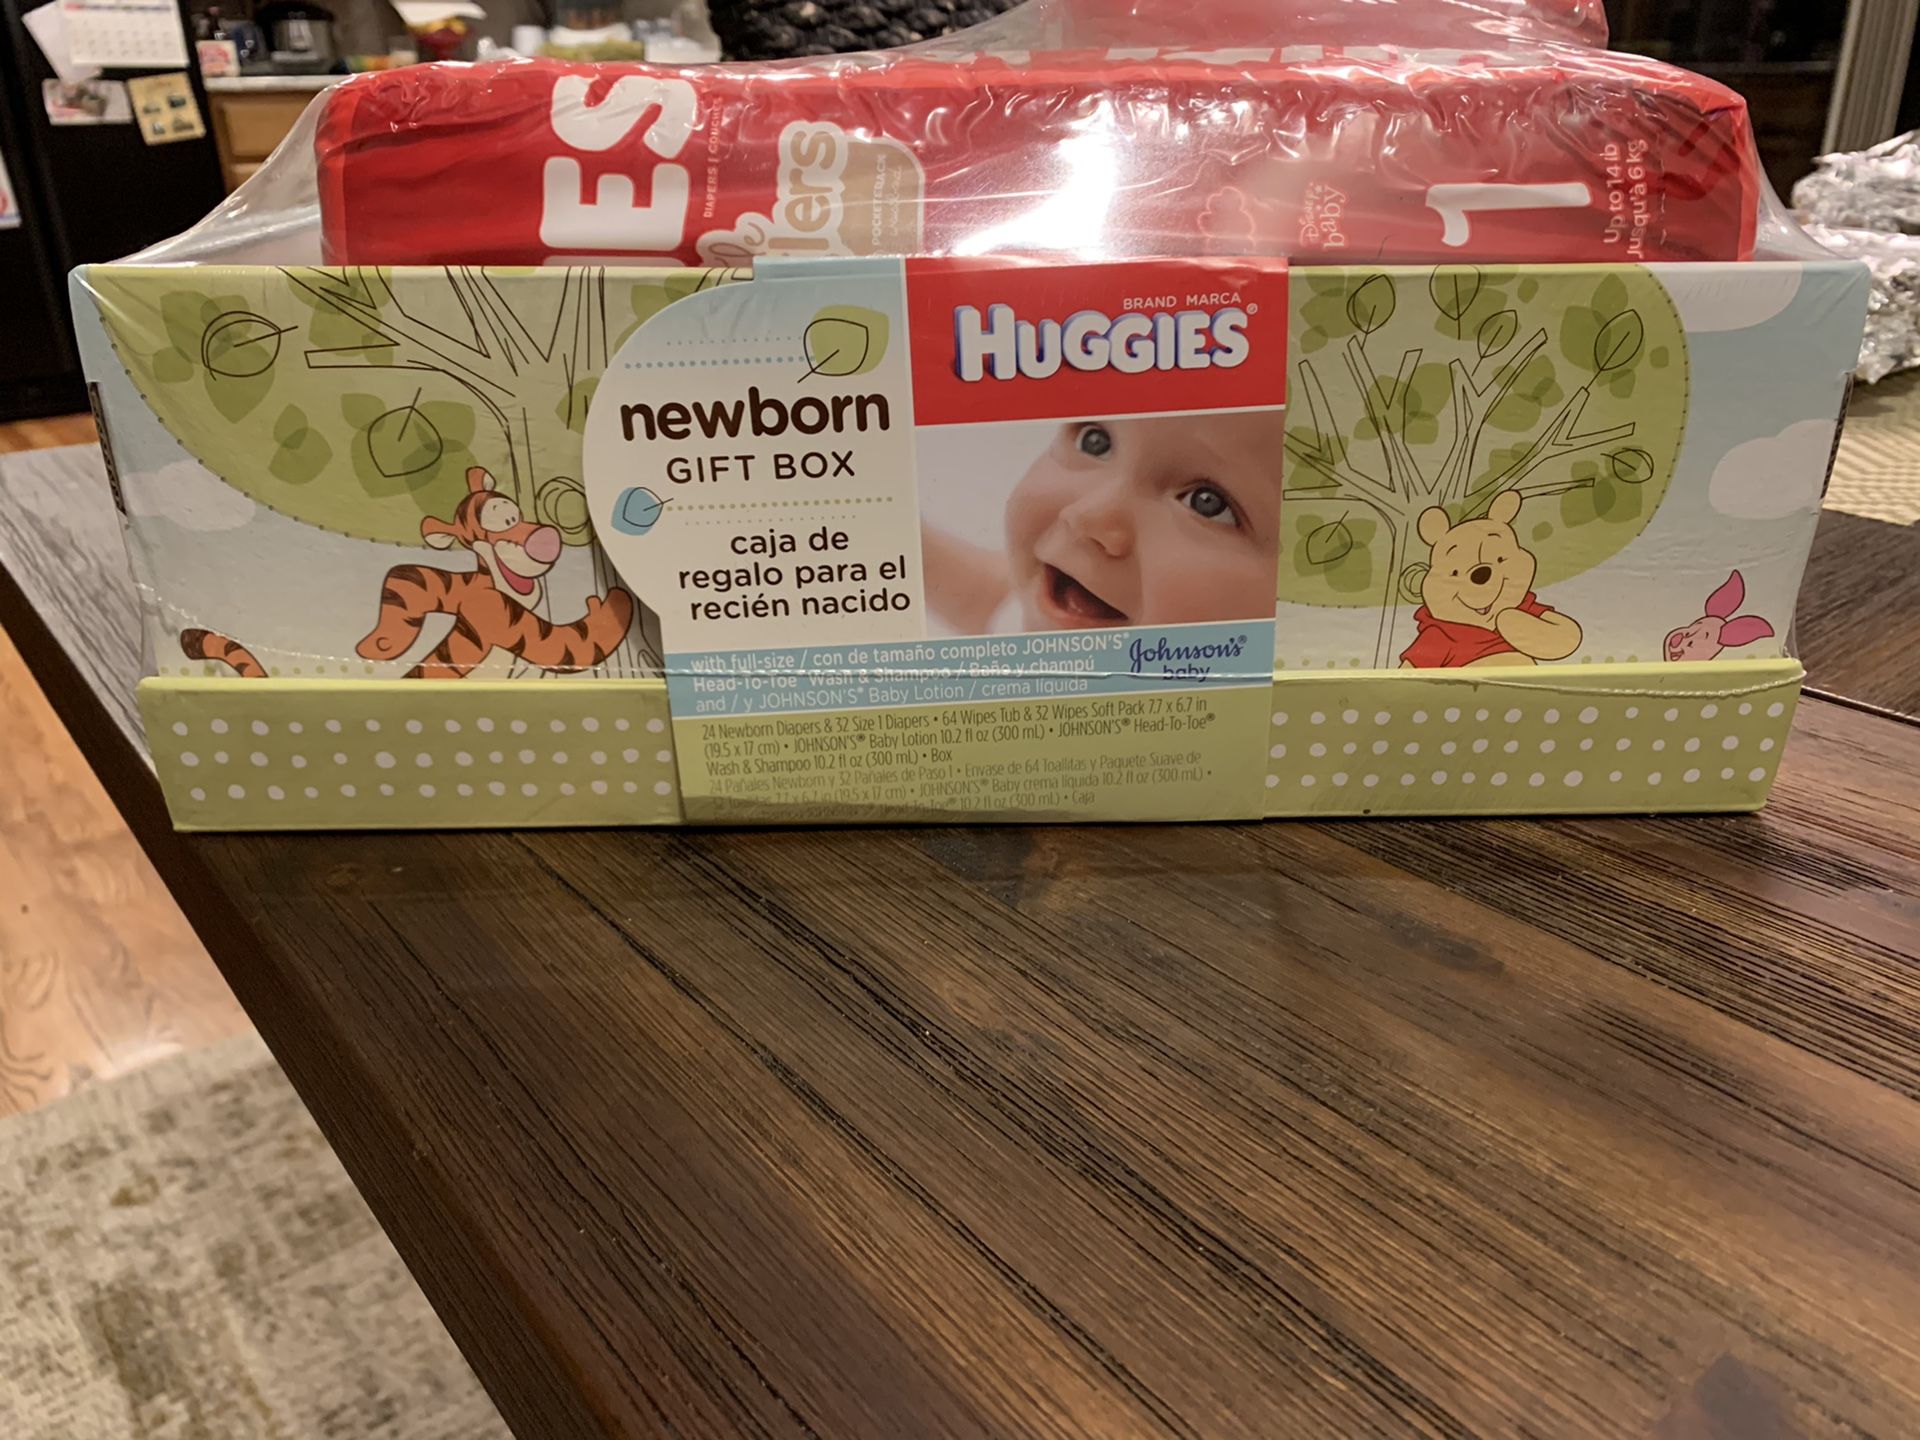 Brand new Huggies newborn gift box